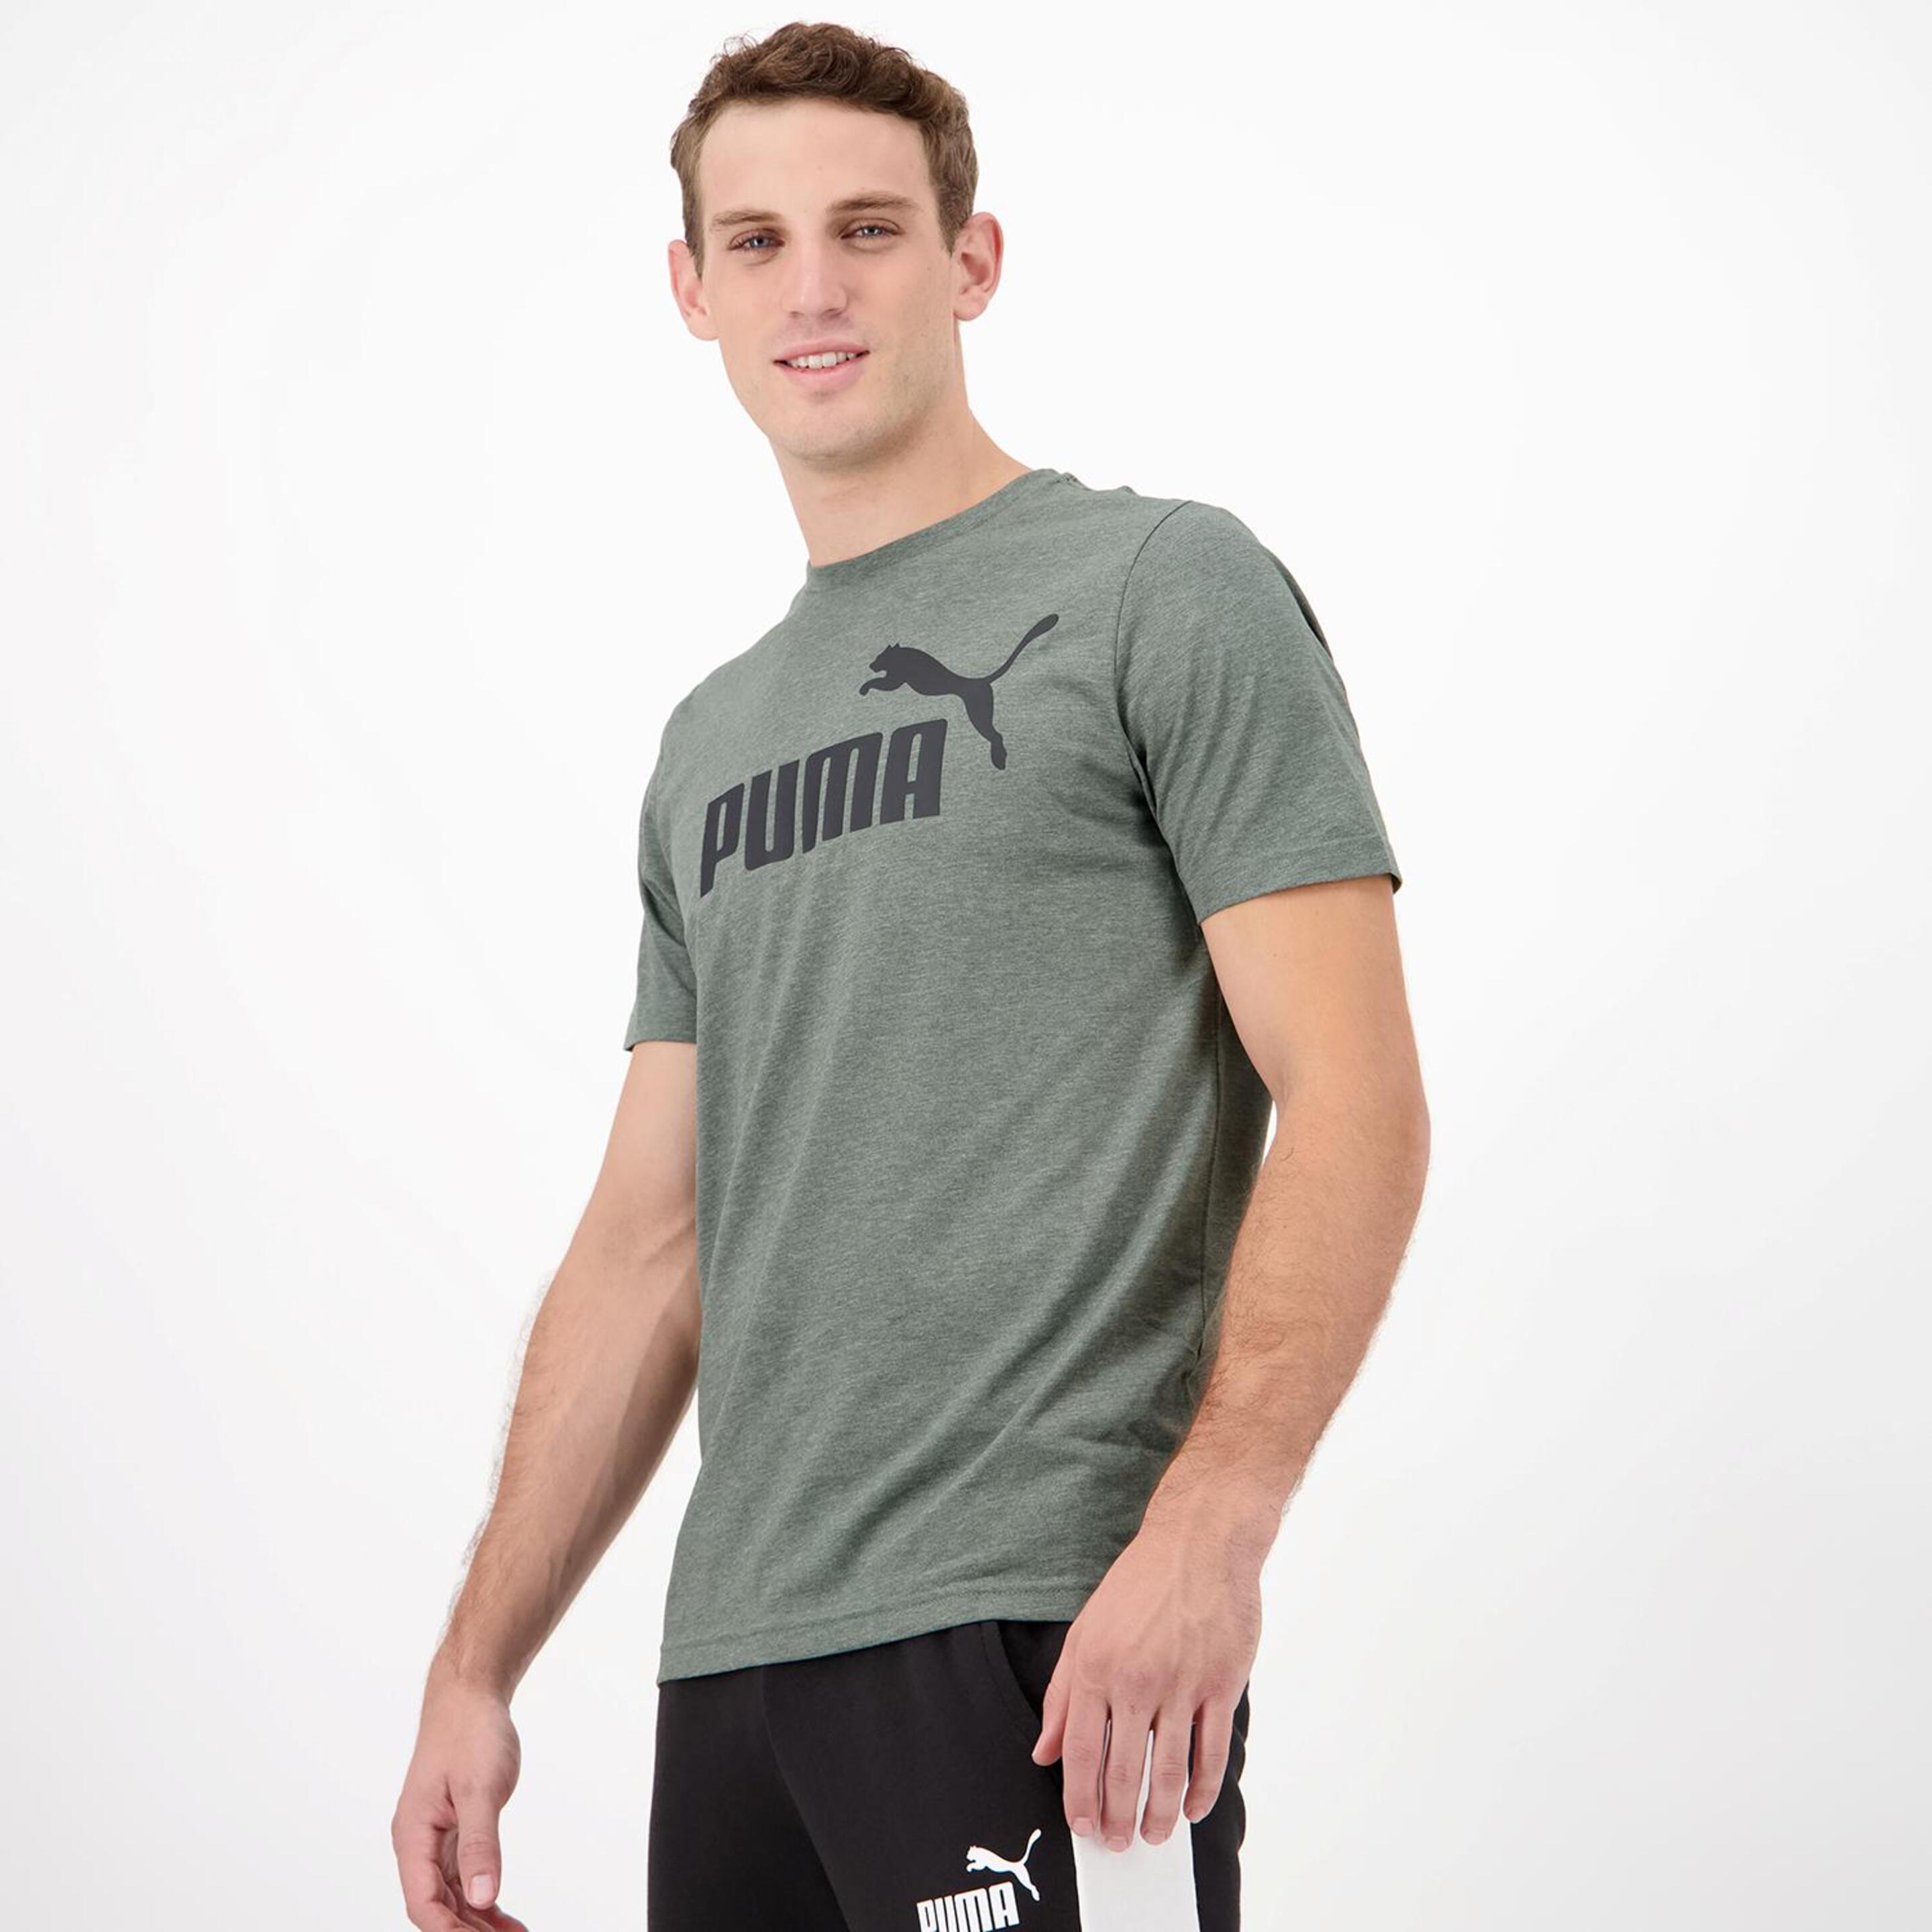 Puma Big Logo - Kaki - Camiseta Hombre